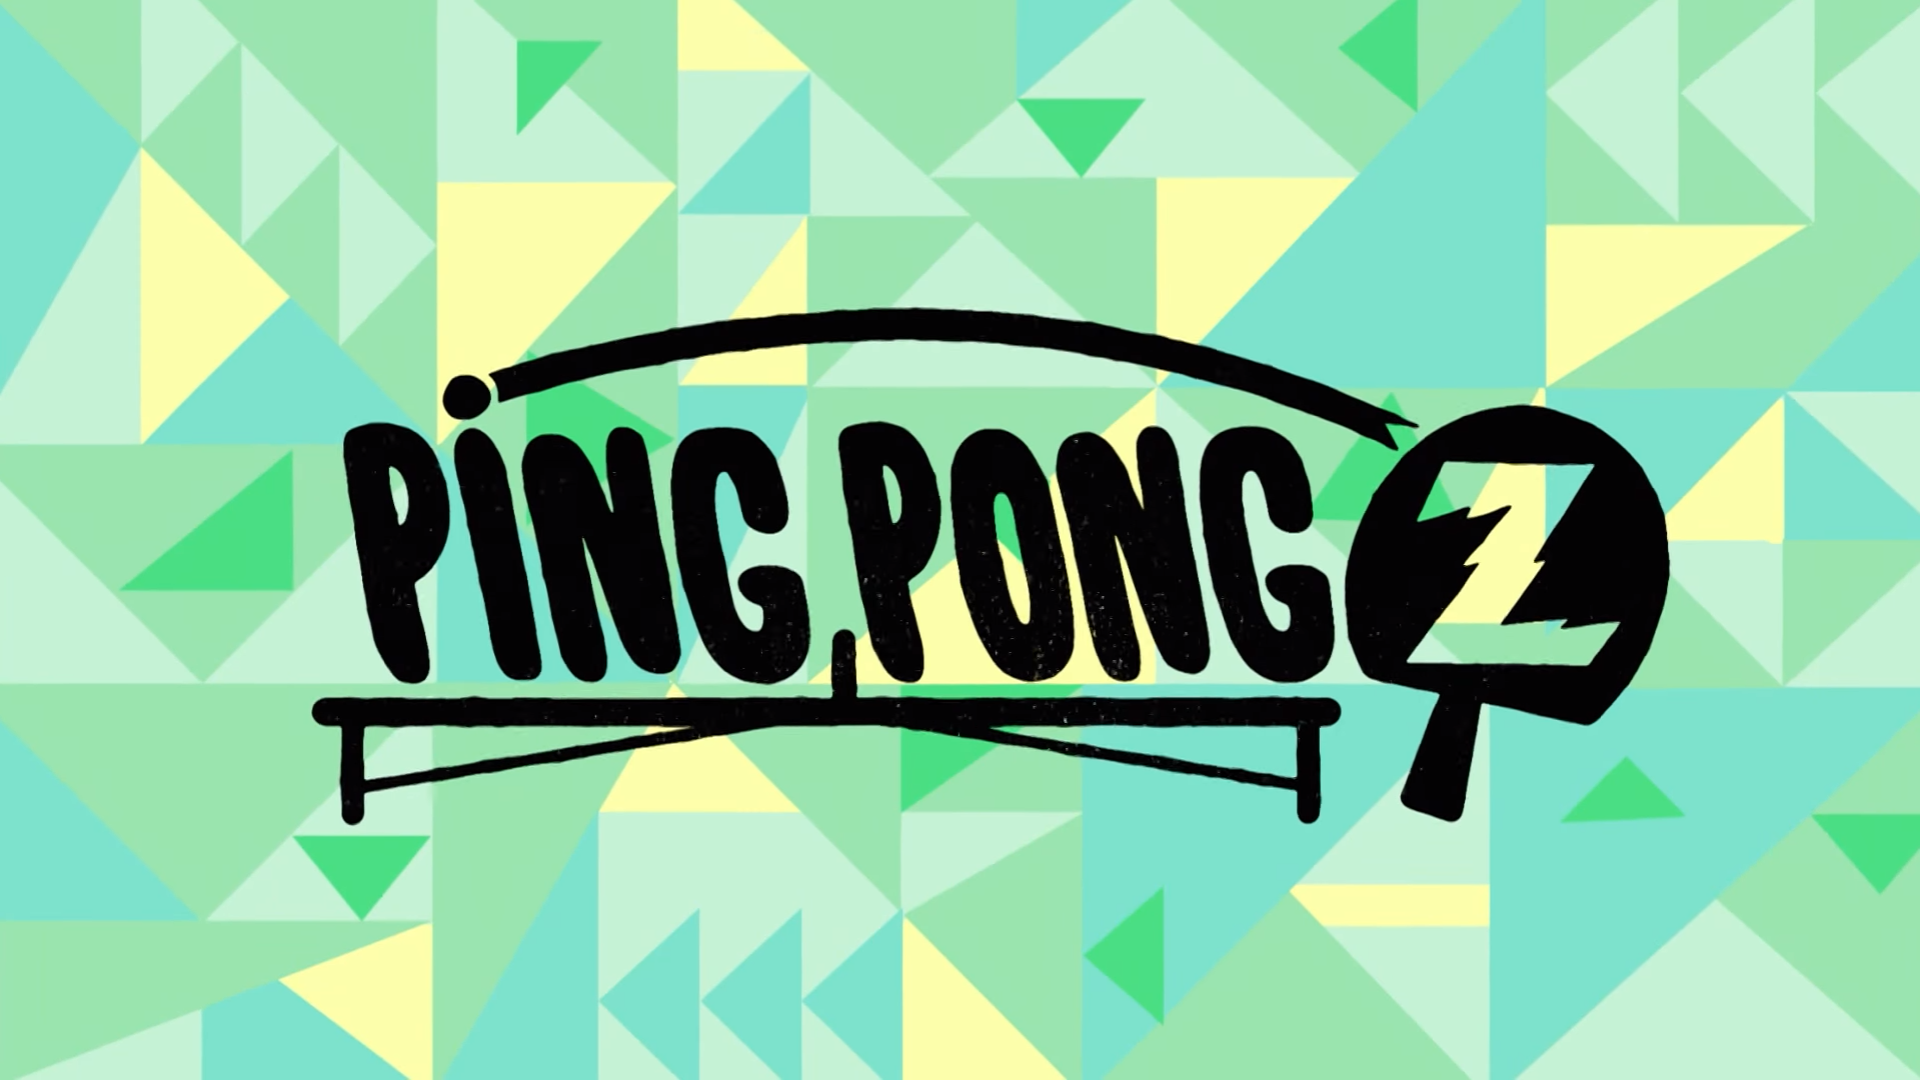 Ping Pong Z